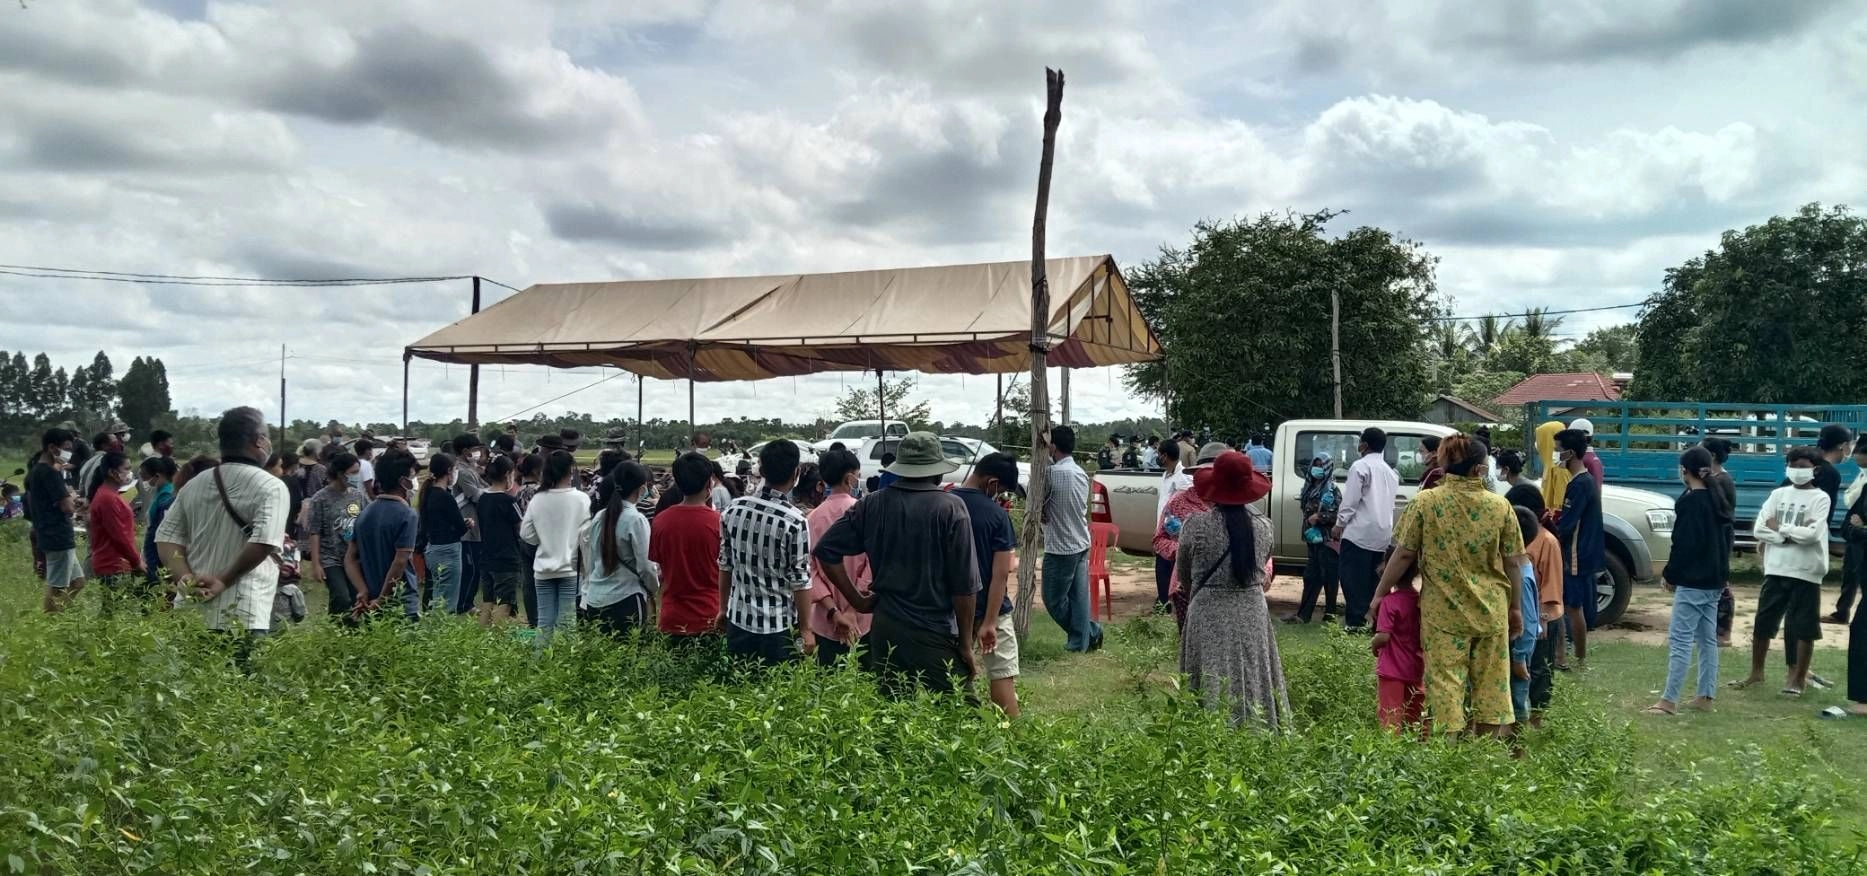 幾十位柬埔寨居民在篩檢站排隊候檢。